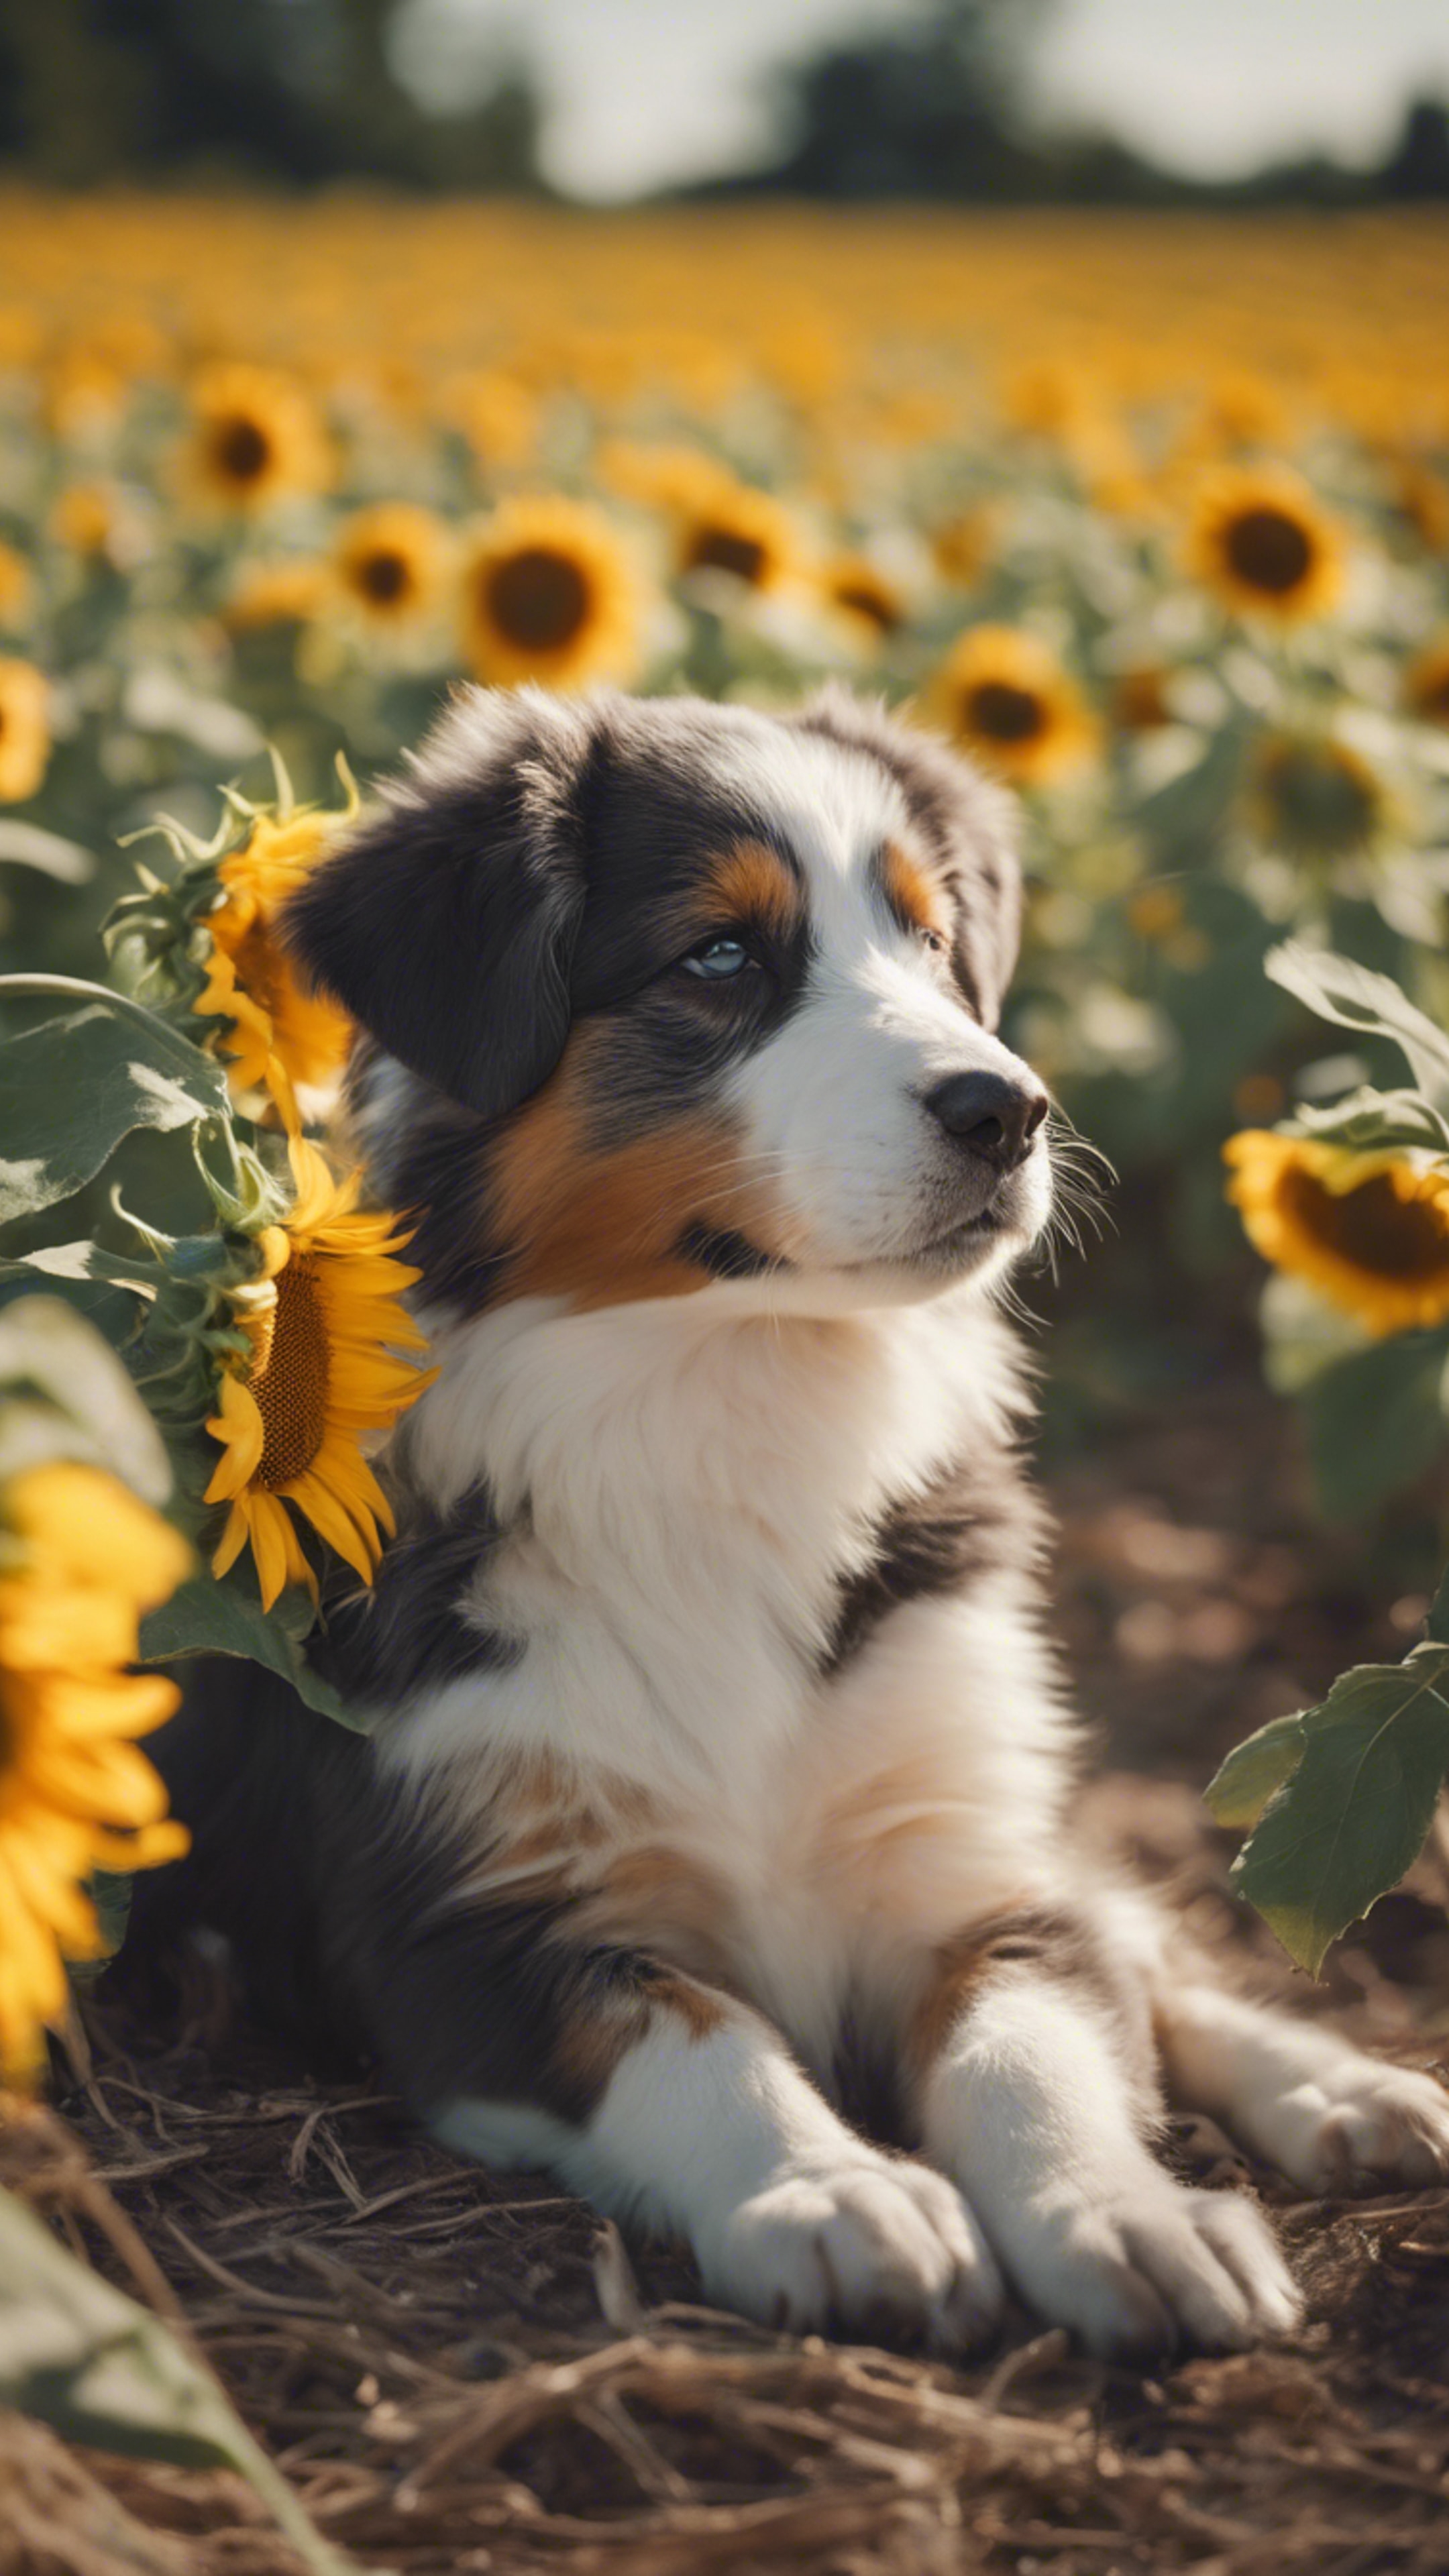 An Australian Shepard puppy dozing off in the field of blooming sunflowers under the summer sun. duvar kağıdı[3112e983c8704a9792f4]